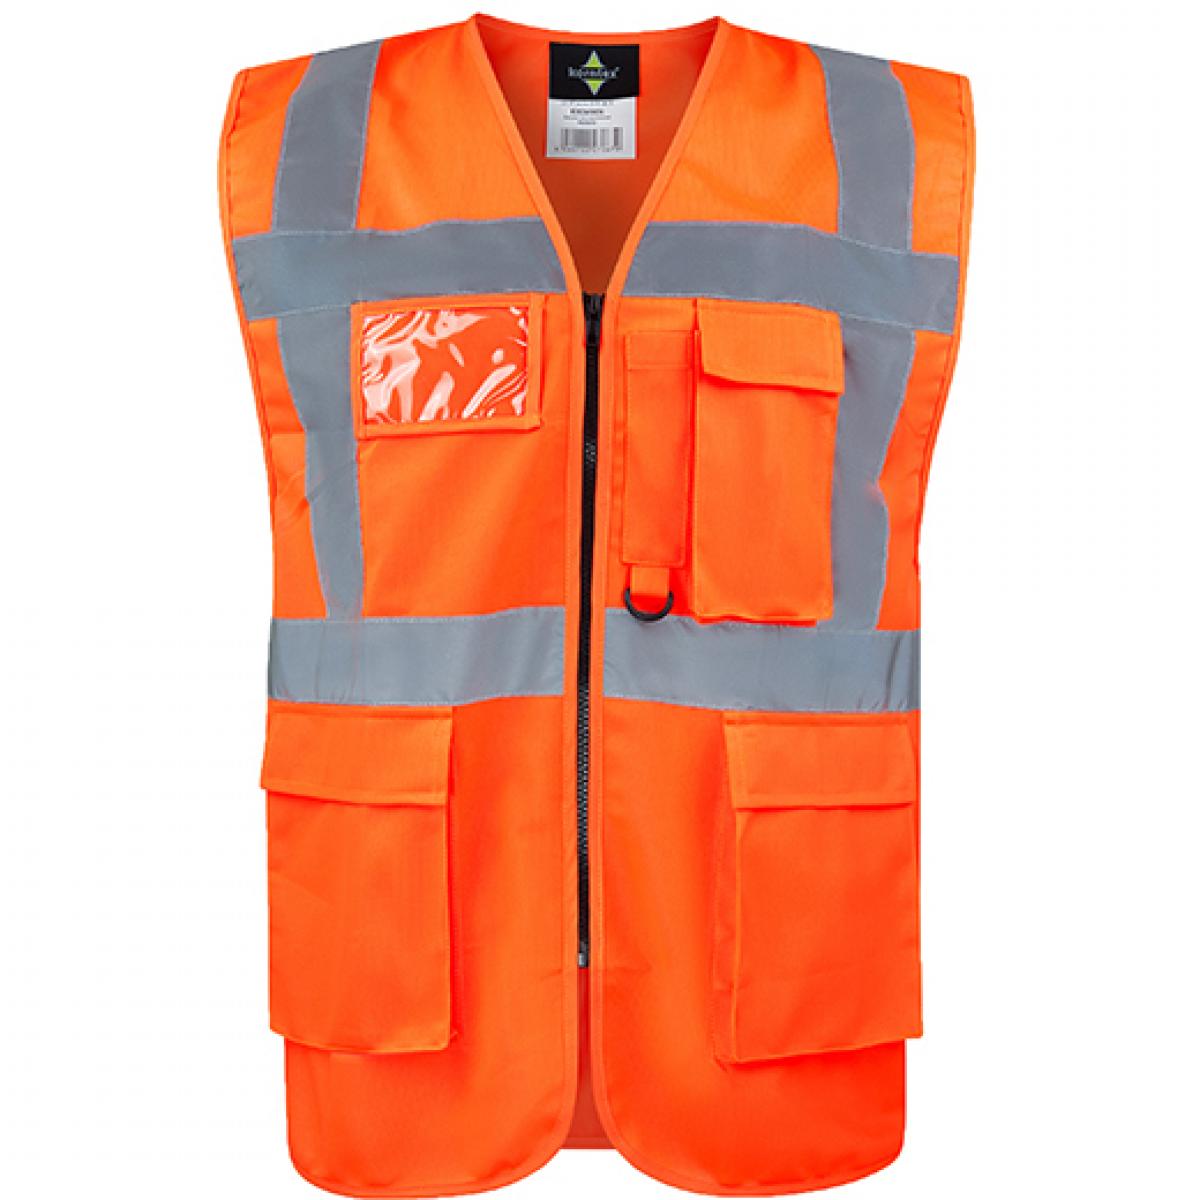 Hersteller: Korntex Herstellernummer: KXCMF Artikelbezeichnung: Comfort Executive Multifunctional Safety Vest Hamburg Farbe: Orange